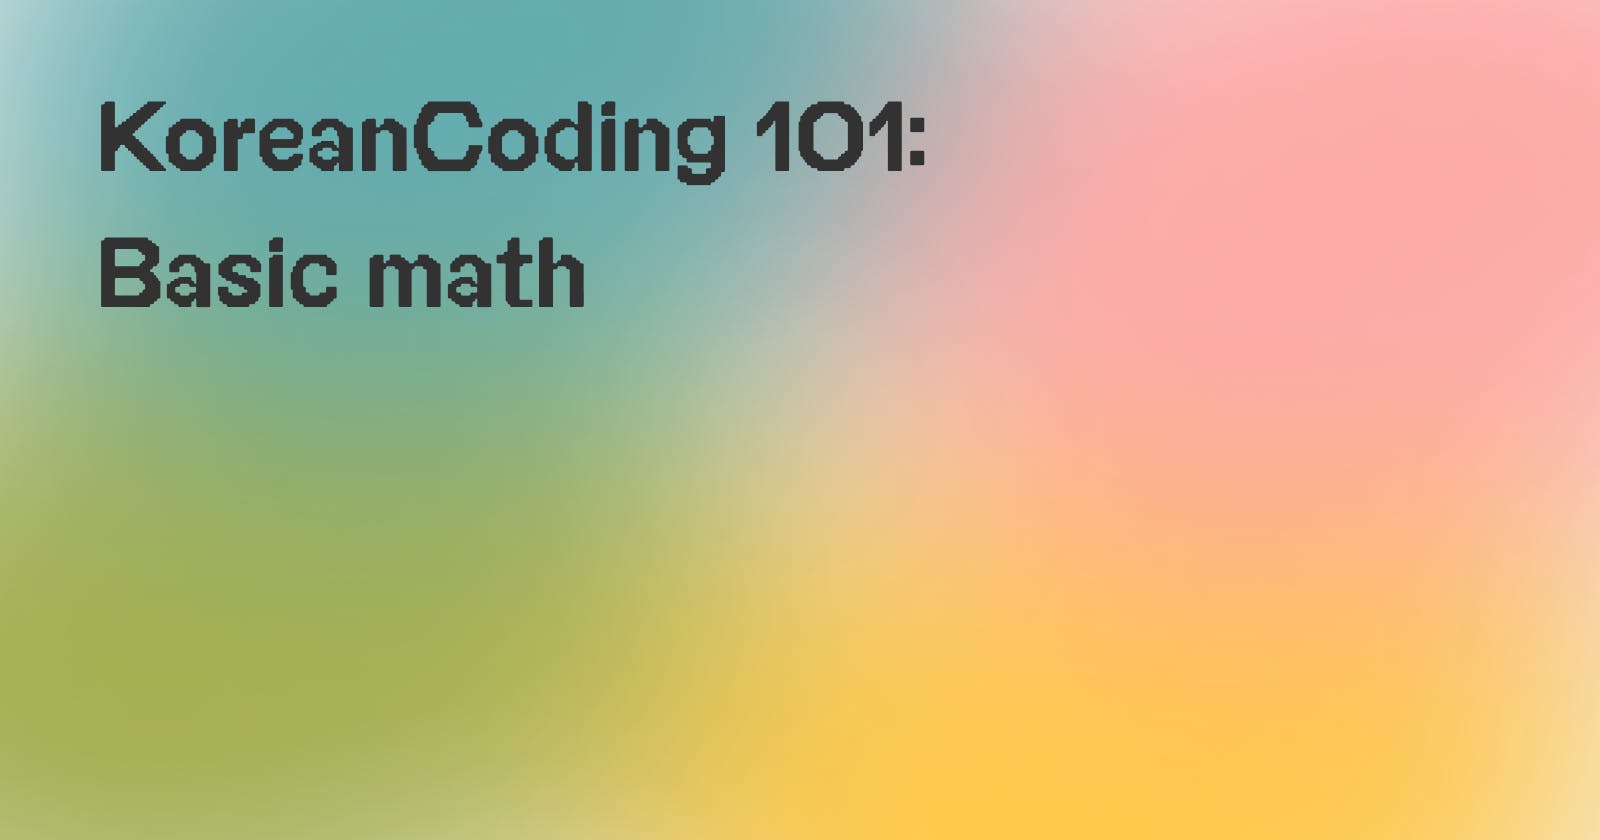 [#1] KoreanCoding 101: Basic math